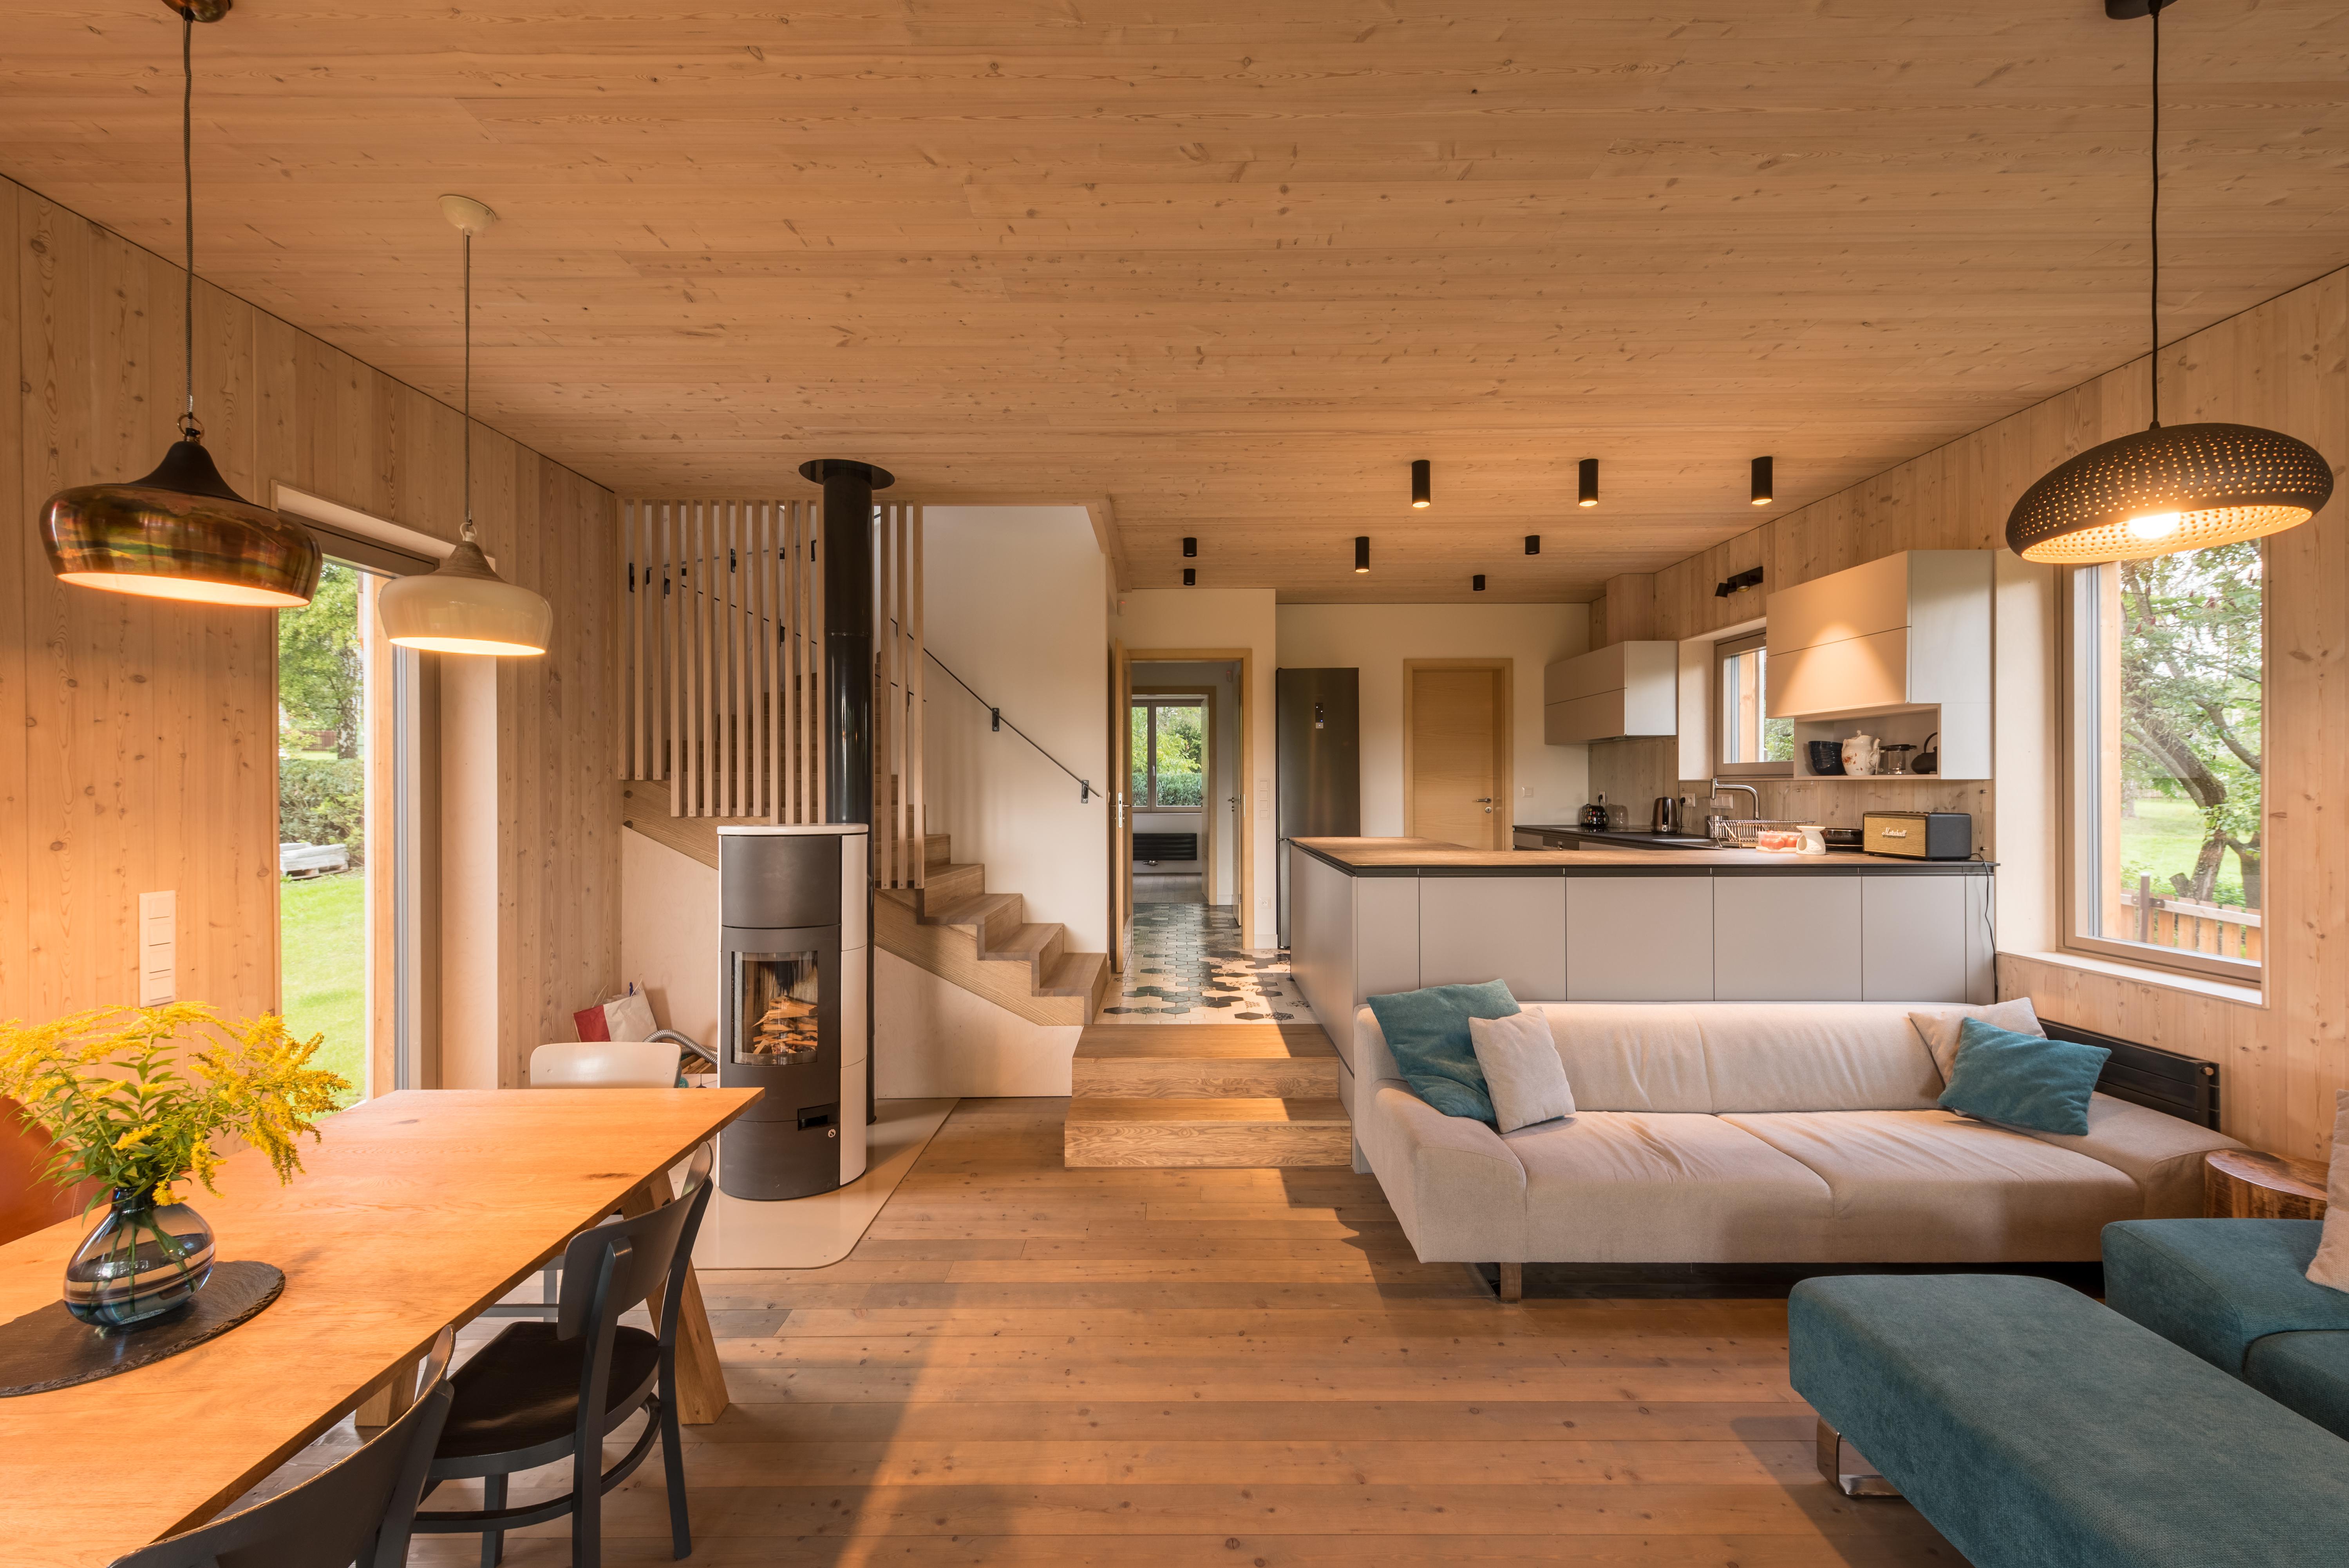 Wohnzimmer und Küche im Holzbaustil